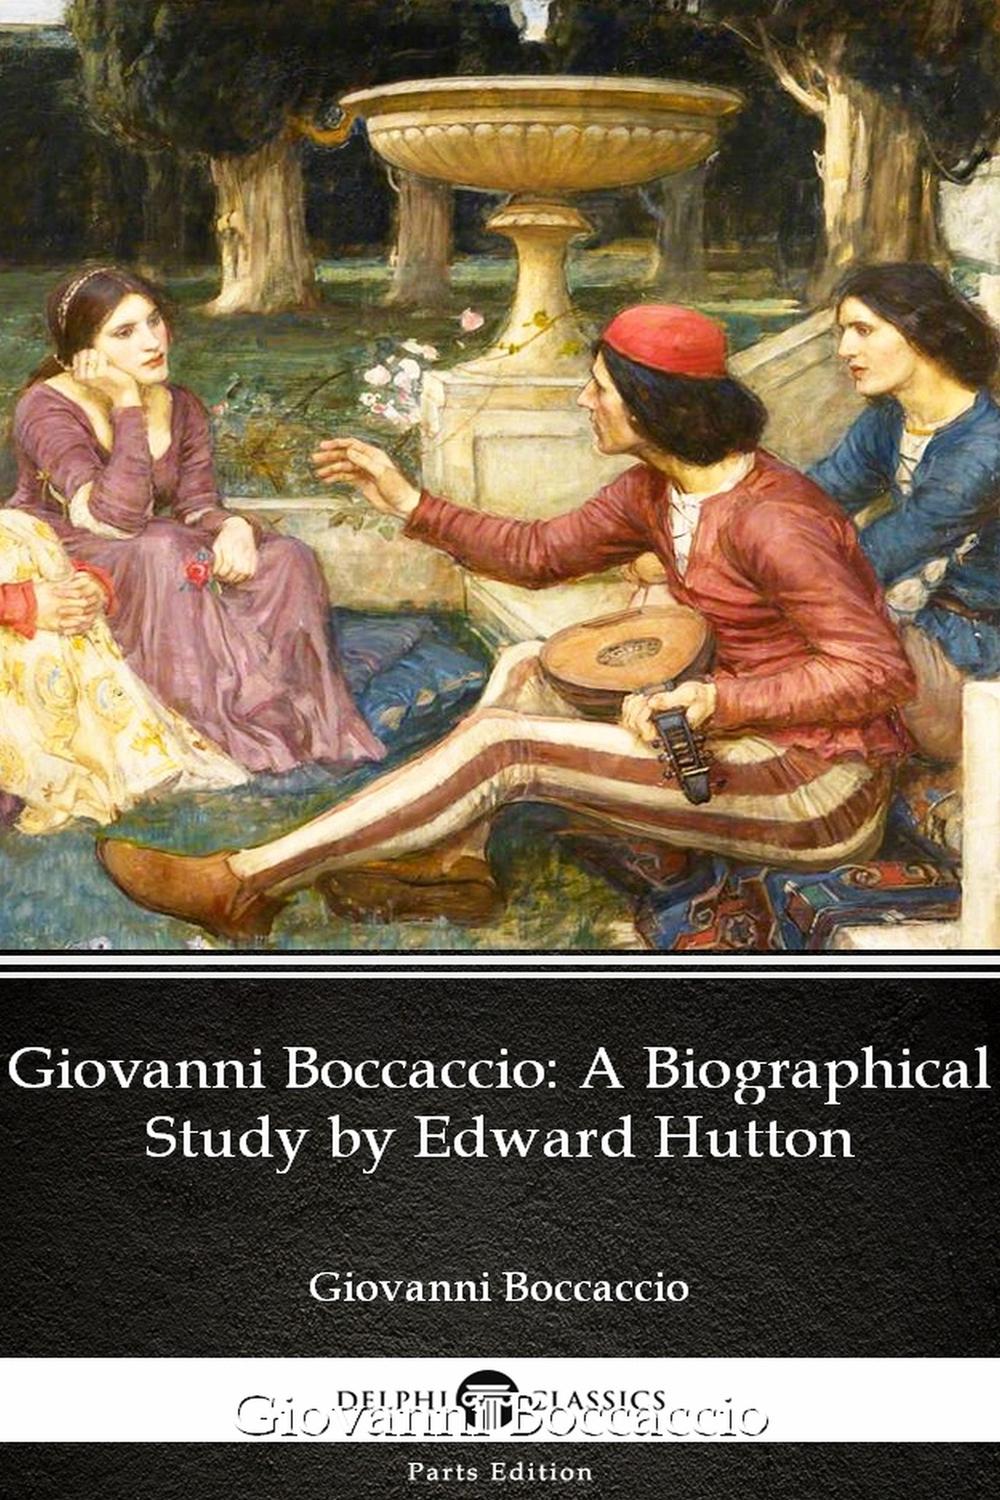 Giovanni Boccaccio A Biographical Study by Edward Hutton - Delphi Classics (Illustrated) - Edward Hutton, Delphi Classics